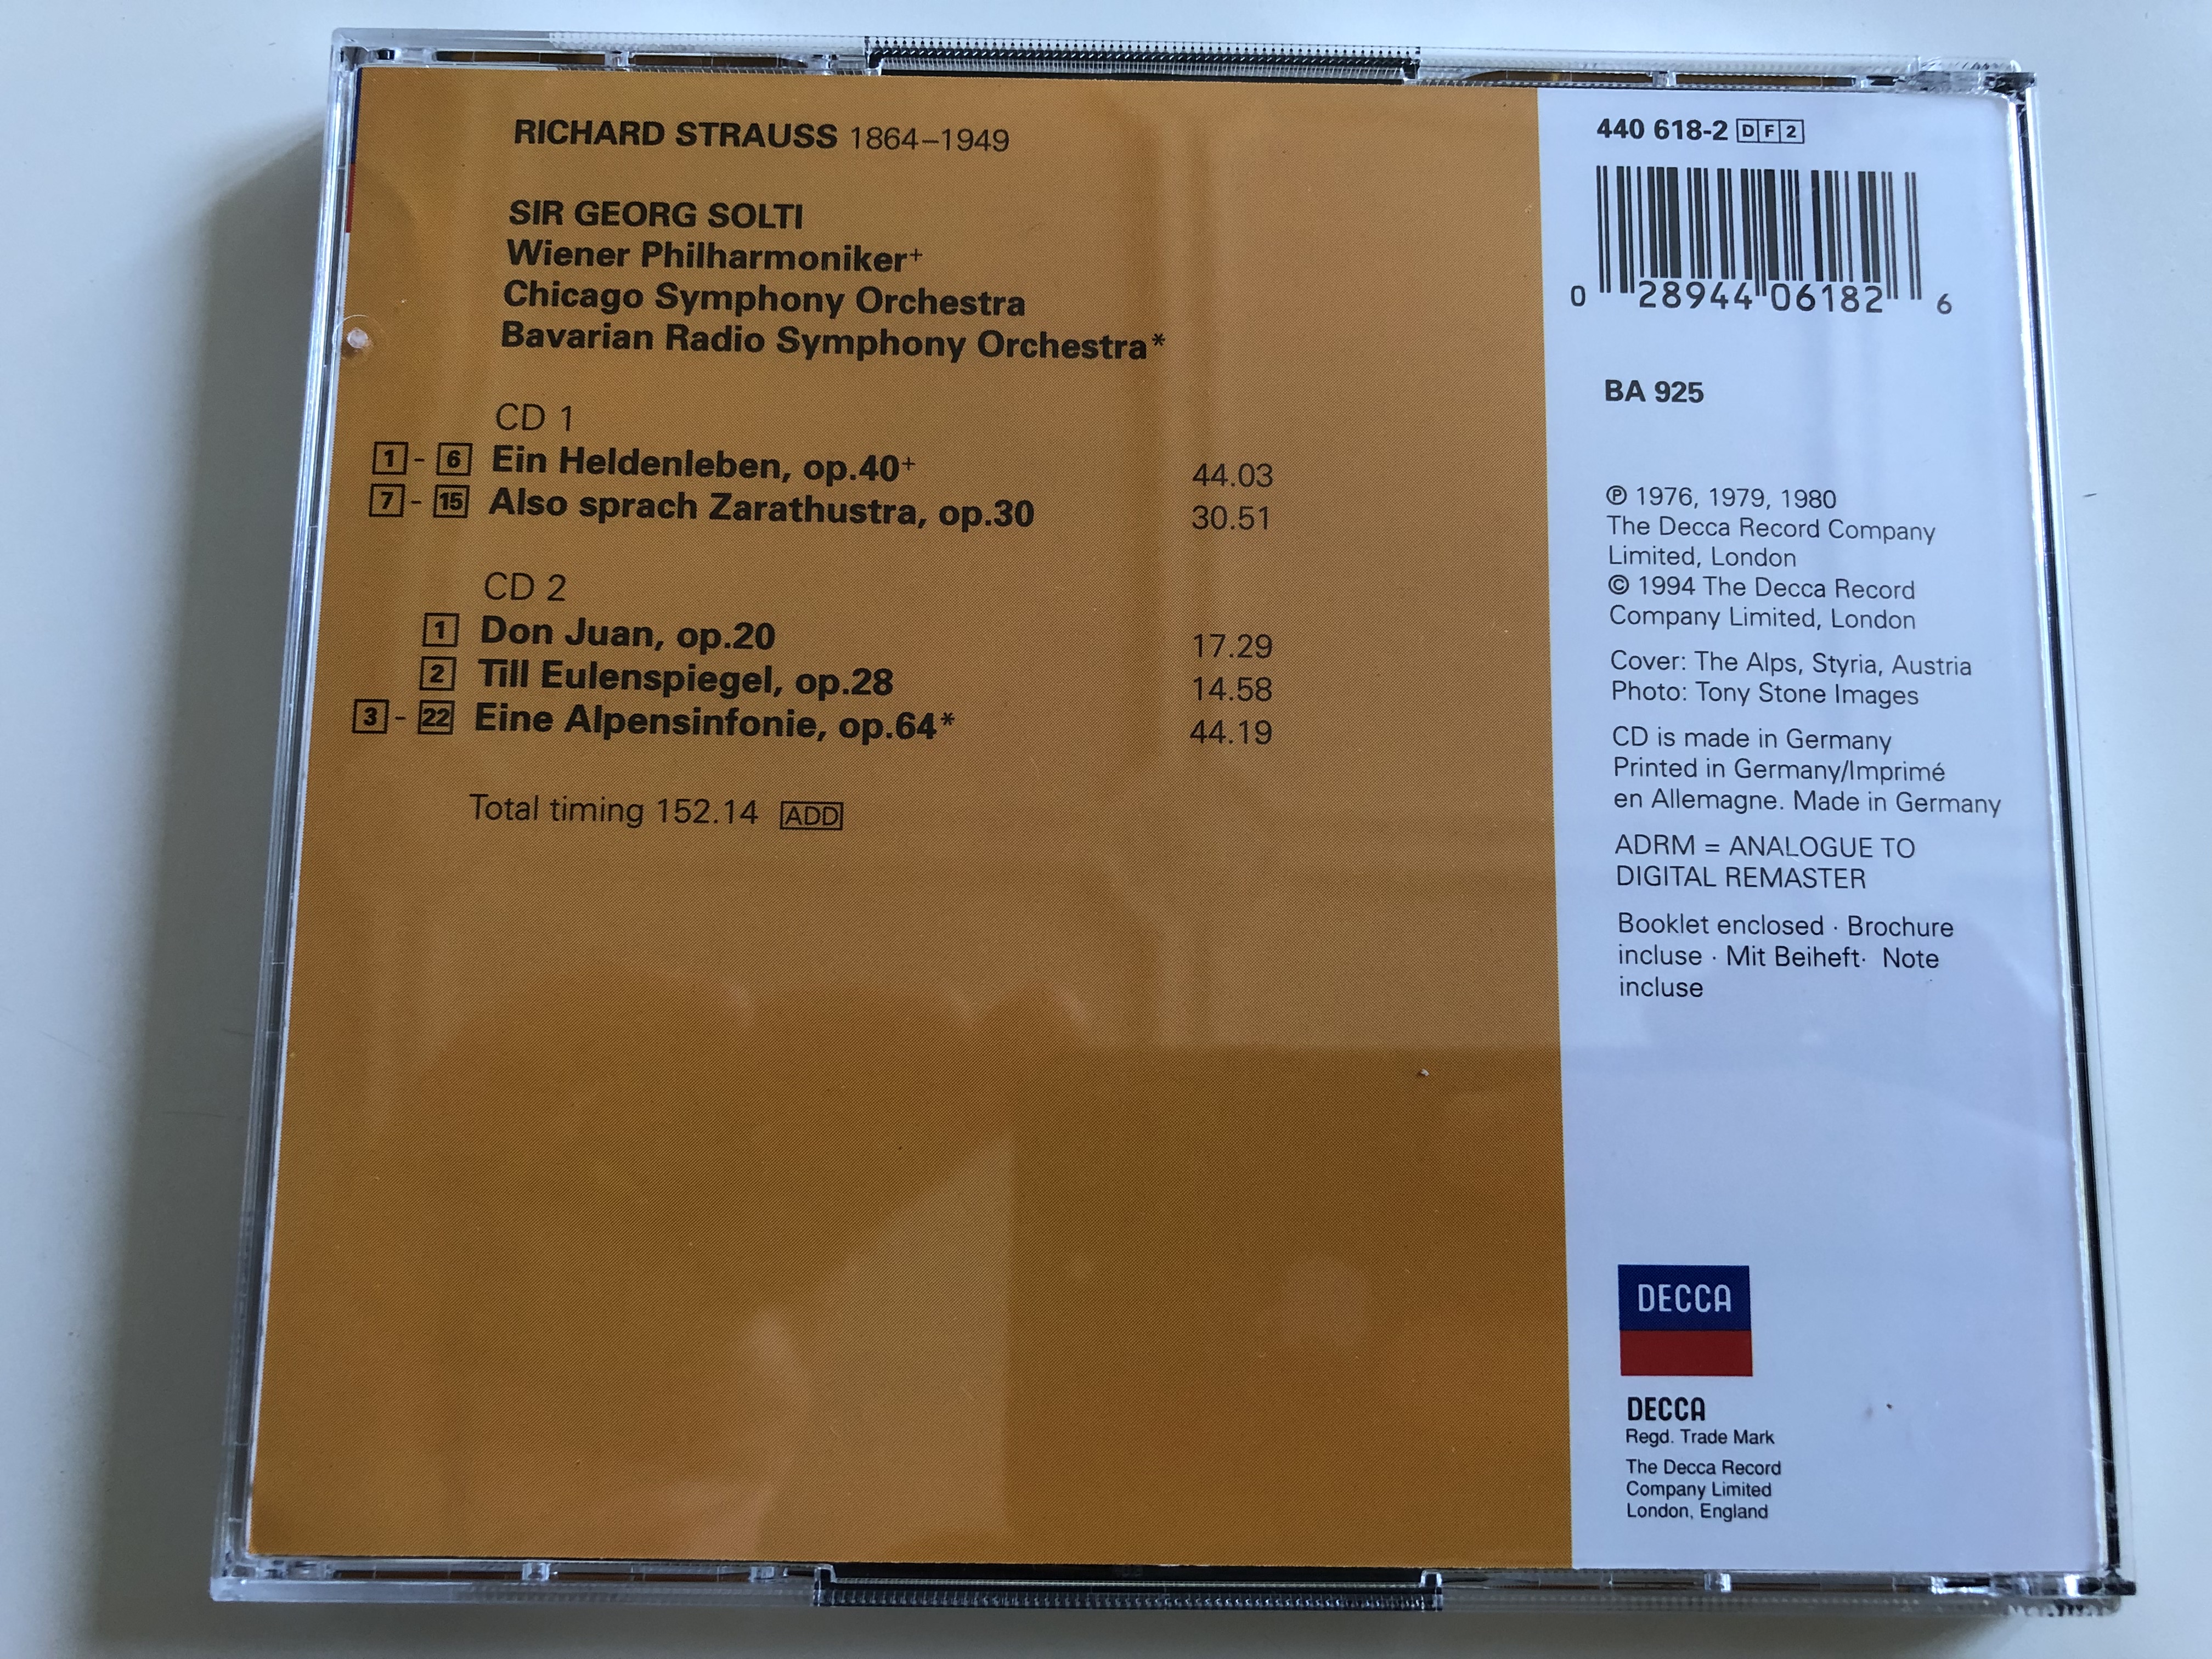 richard-strauss-also-sprach-zarathustra-ein-heldenleben-eine-alpensinfonie-don-juan-till-eulenspiegel-conducted-by-sir-georg-solti-double-decca-2-cd-audio-cd-set-1994-7-.jpg